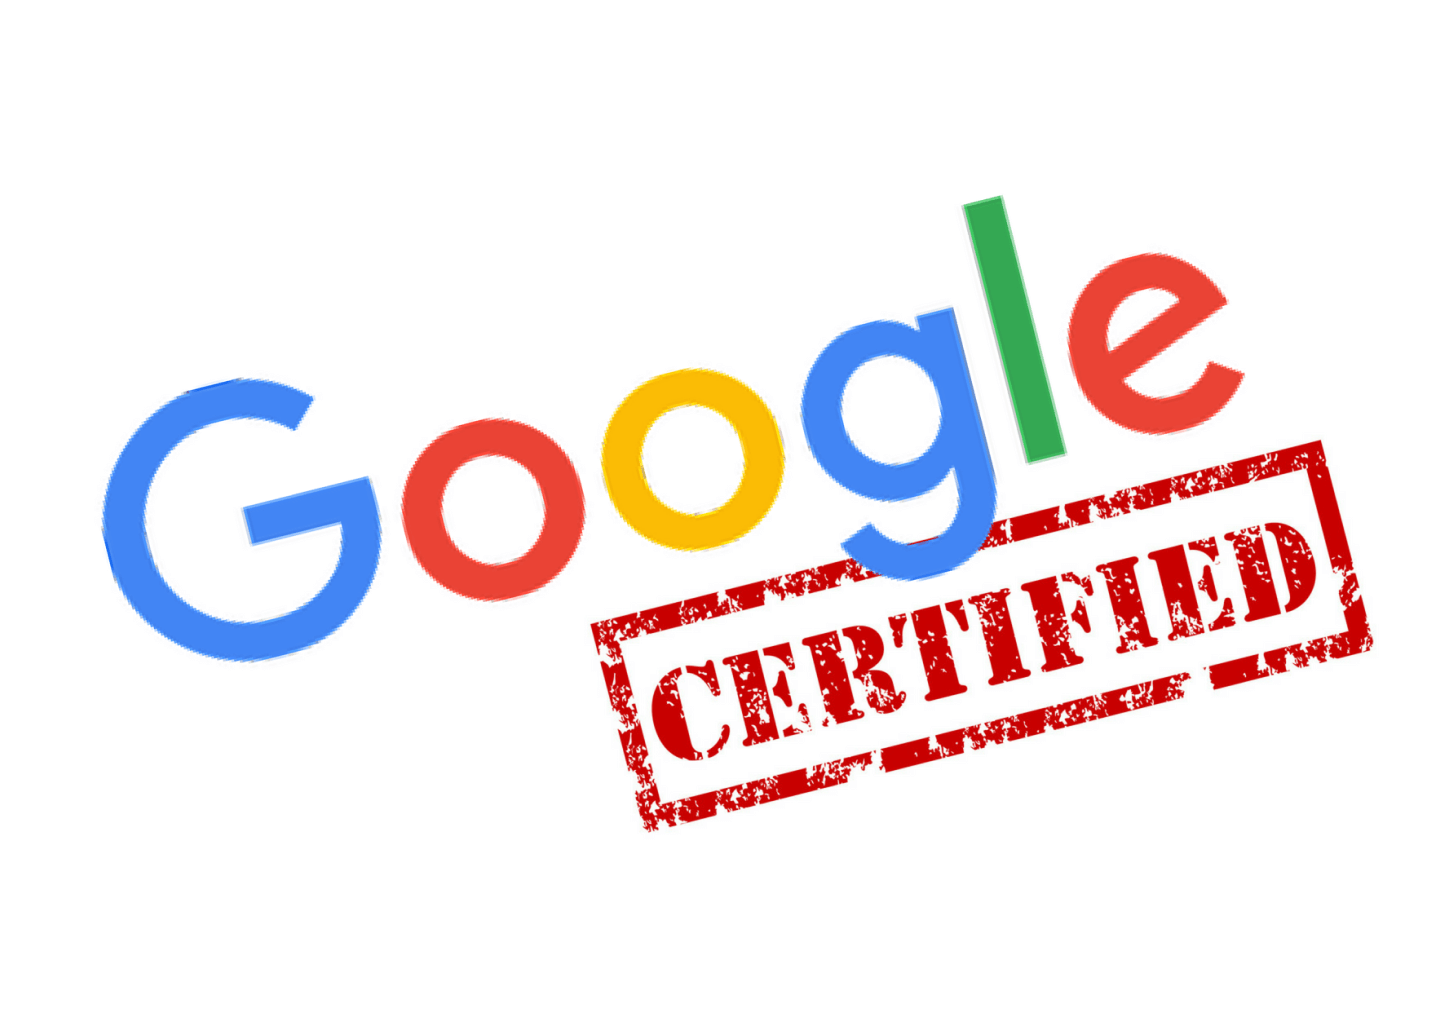 Google Certified_DUCECAMPAIGN WEBSITE PROMO